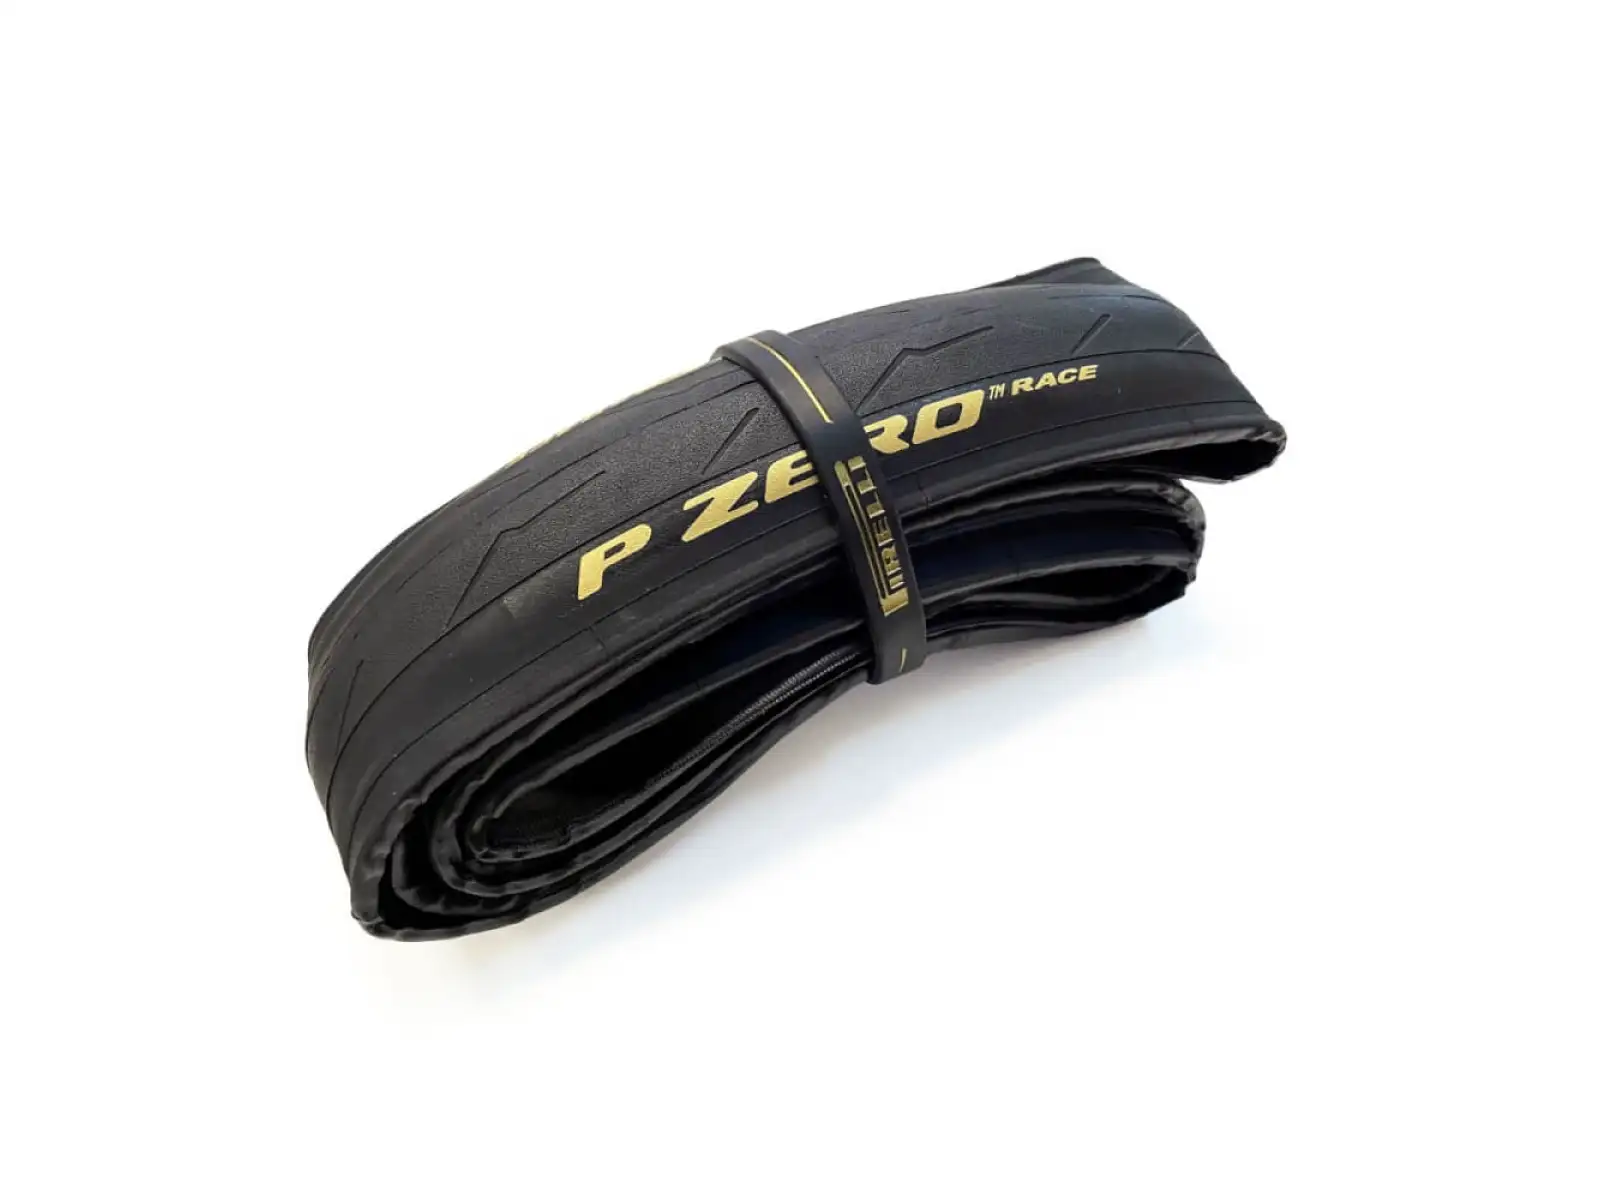 Pirelli P ZERO™ Race 150° Aniversary 28-622 silniční plášť kevlar černá